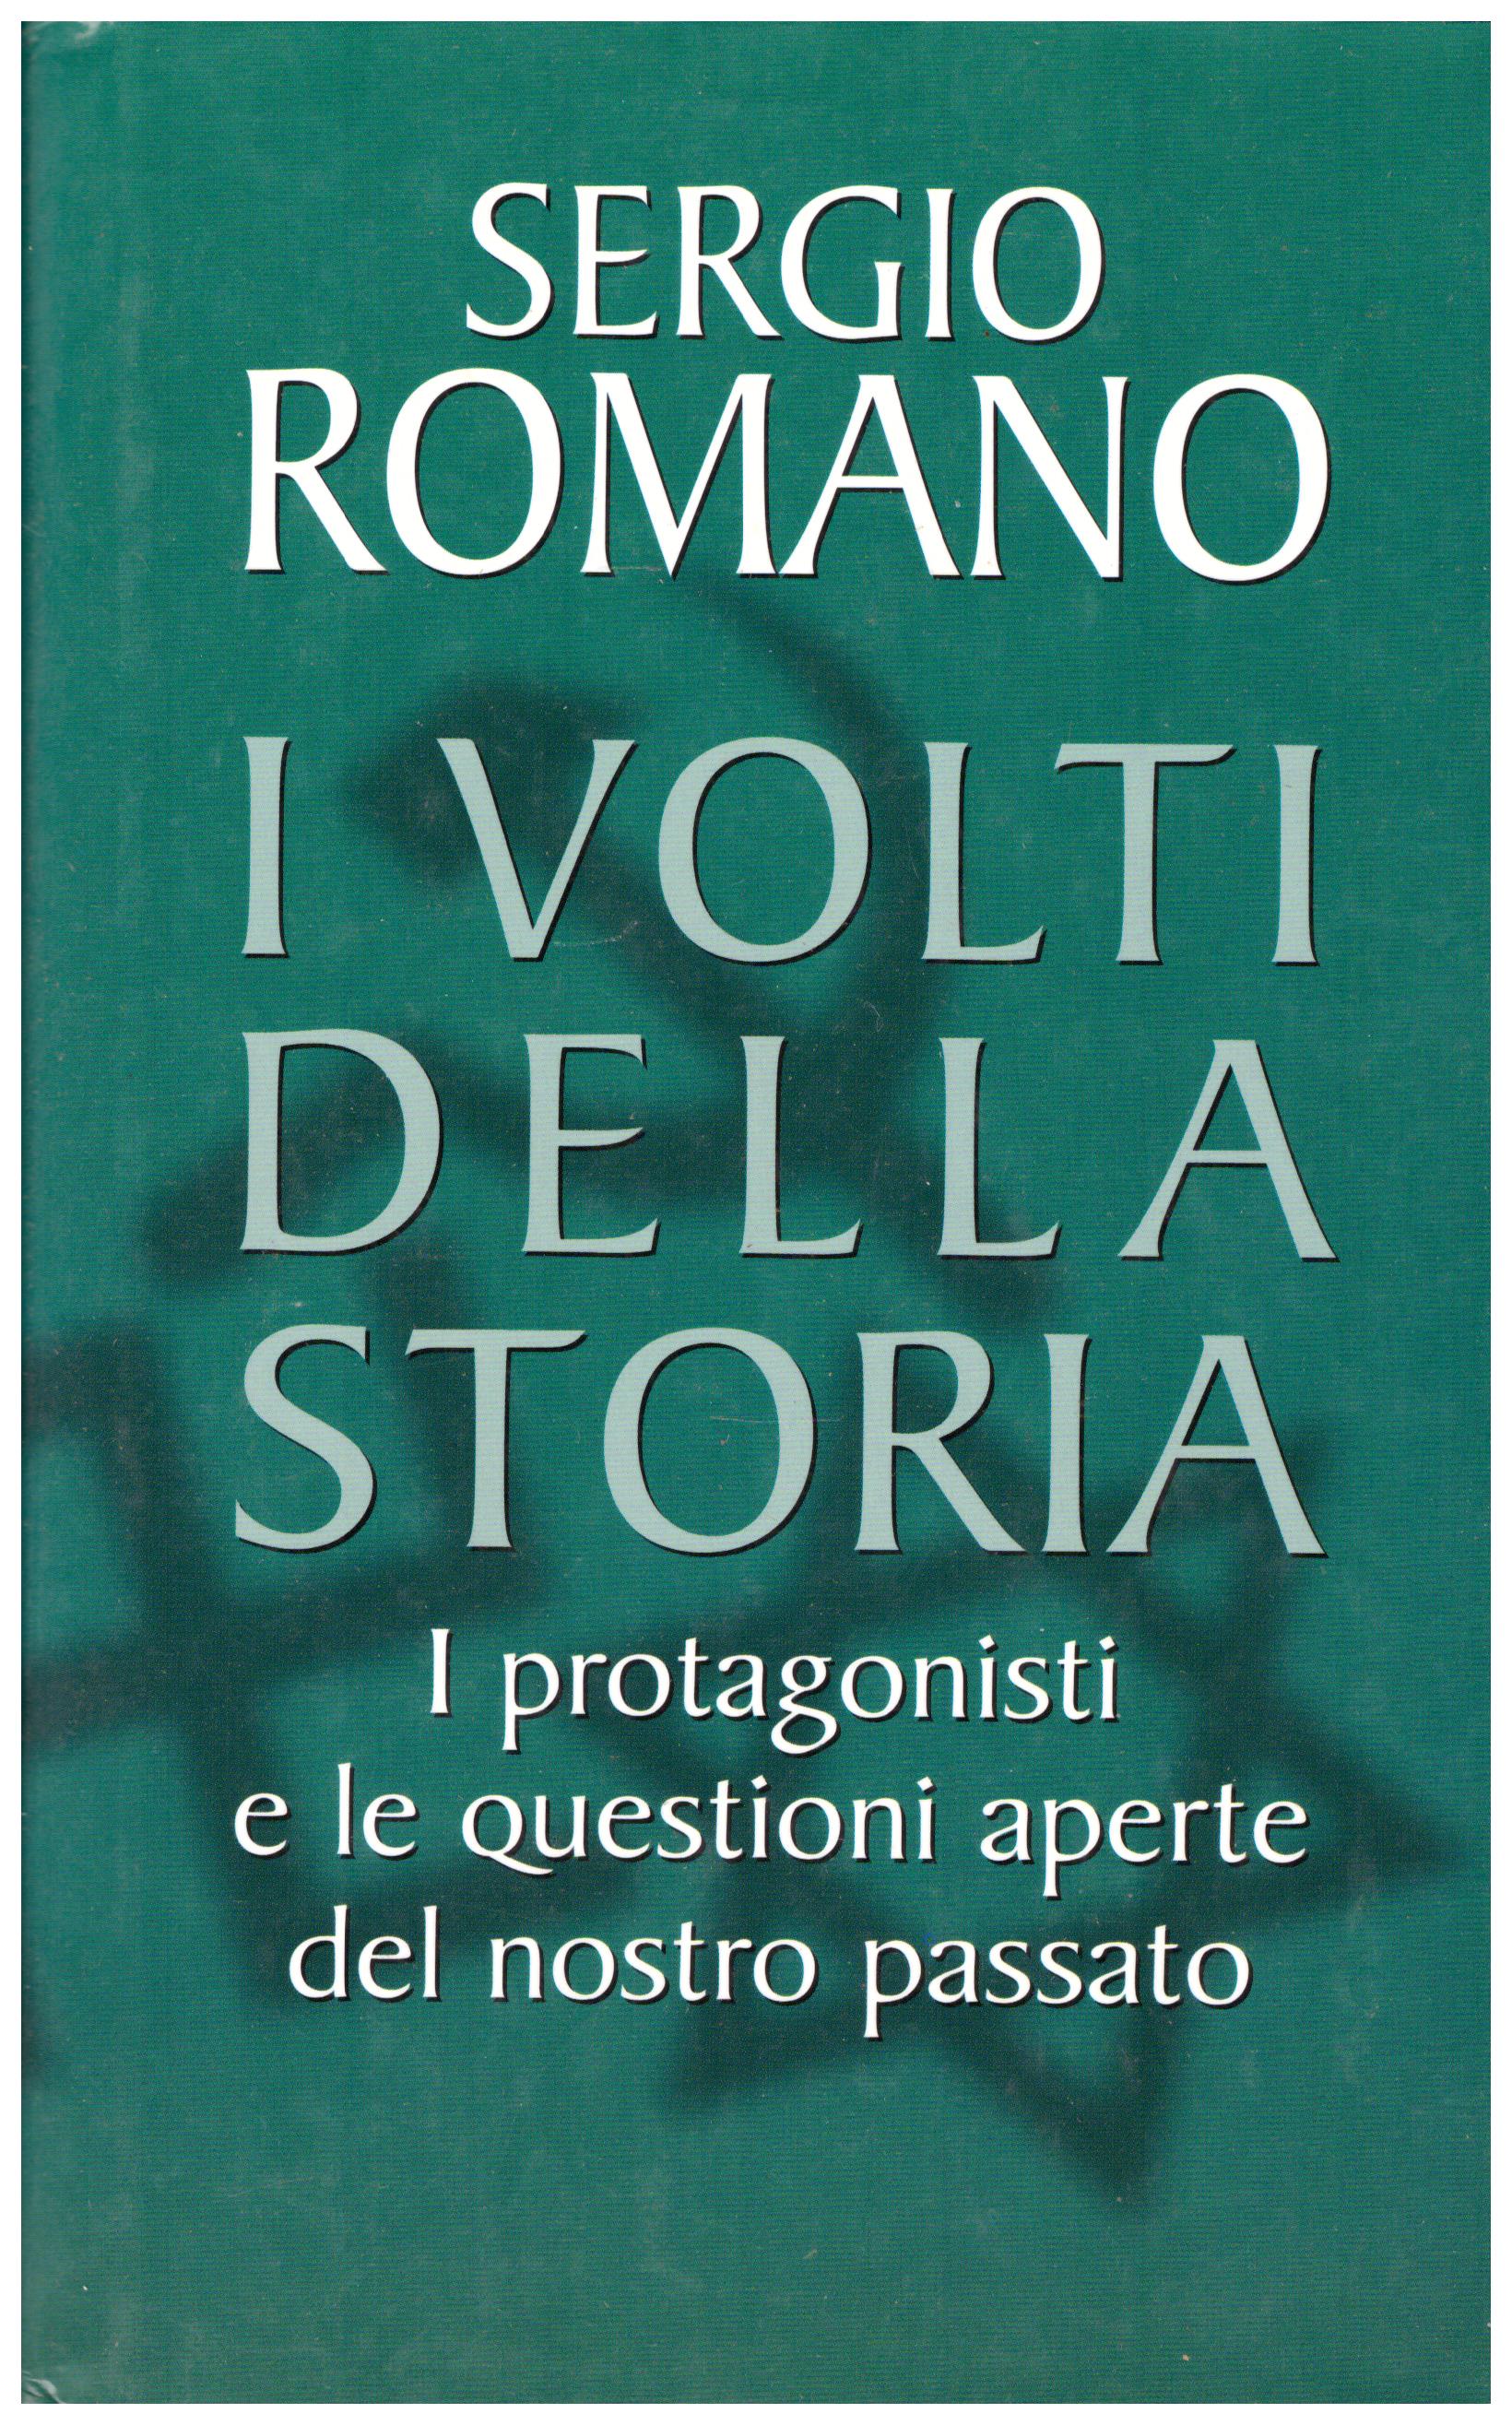 Titolo: I volti della storia Autore: Sergio Romano Editore: RCS 2001